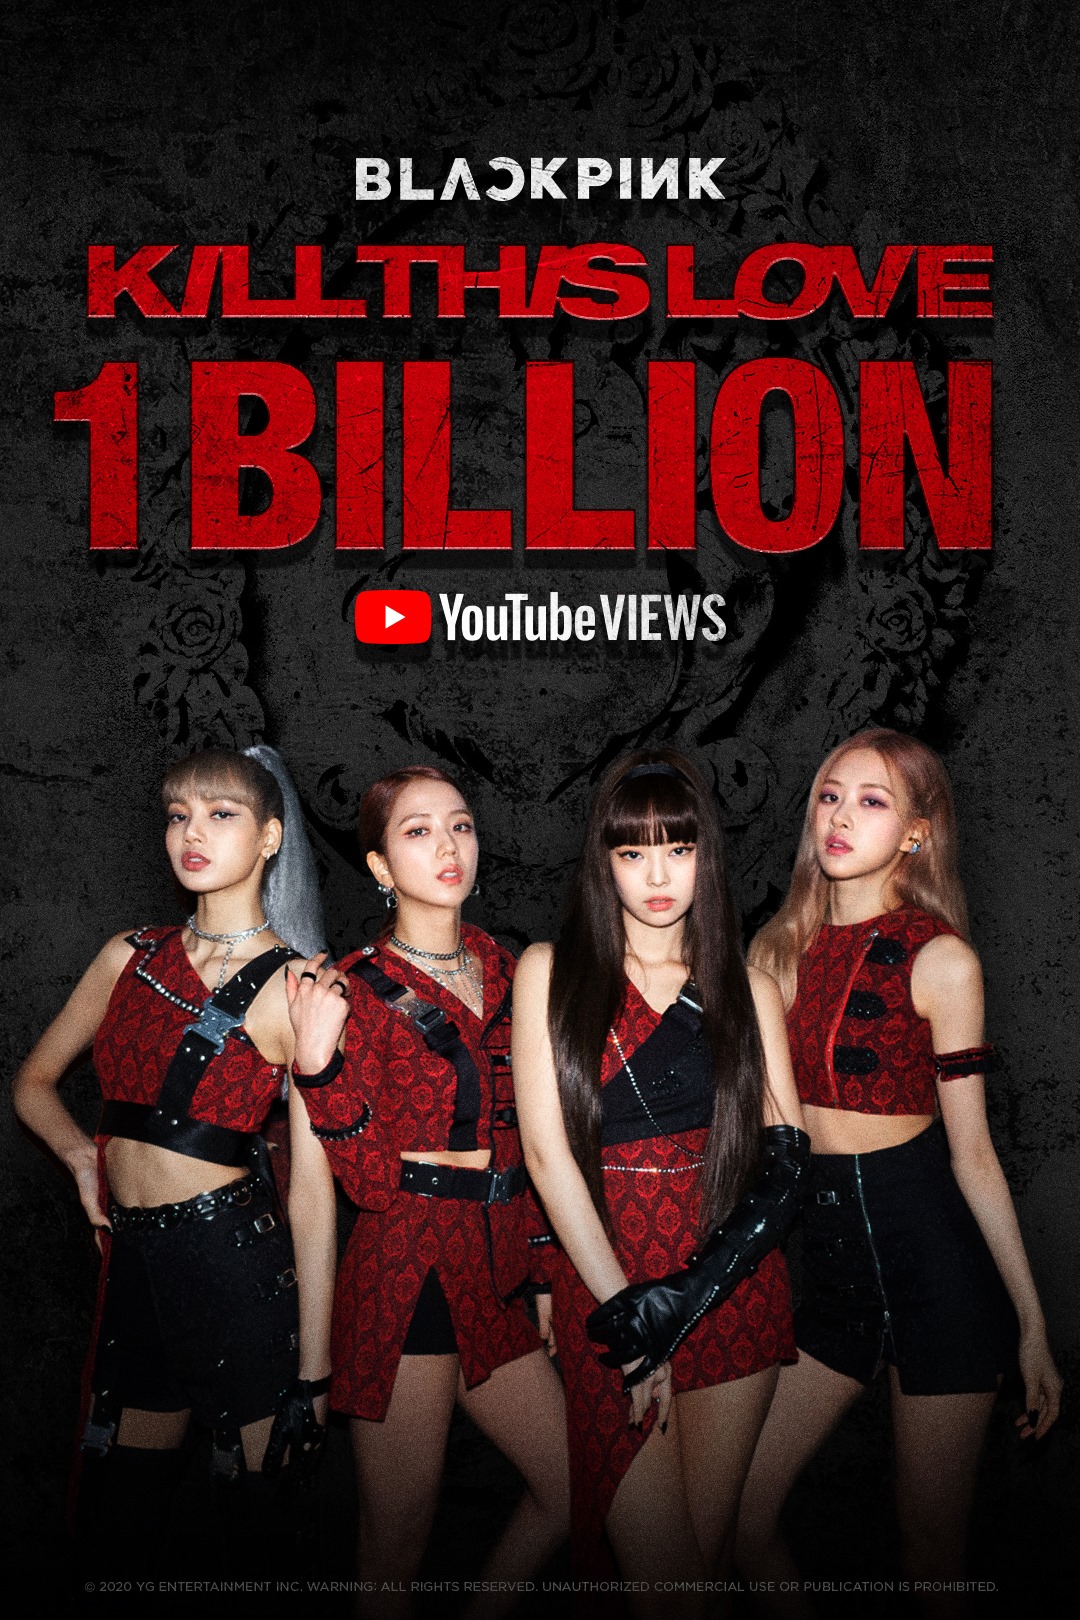 Mốc 1 tỷ lượt xem - MV Kill This Love của Blackpink đã đạt mốc 1 tỷ lượt xem trên YouTube. Đó là một thành tích đáng kinh ngạc, chứng tỏ sức hút của họ trên toàn thế giới. Hãy xem hình ảnh liên quan để hiểu thêm về những gì góp phần tạo nên thành công của họ.